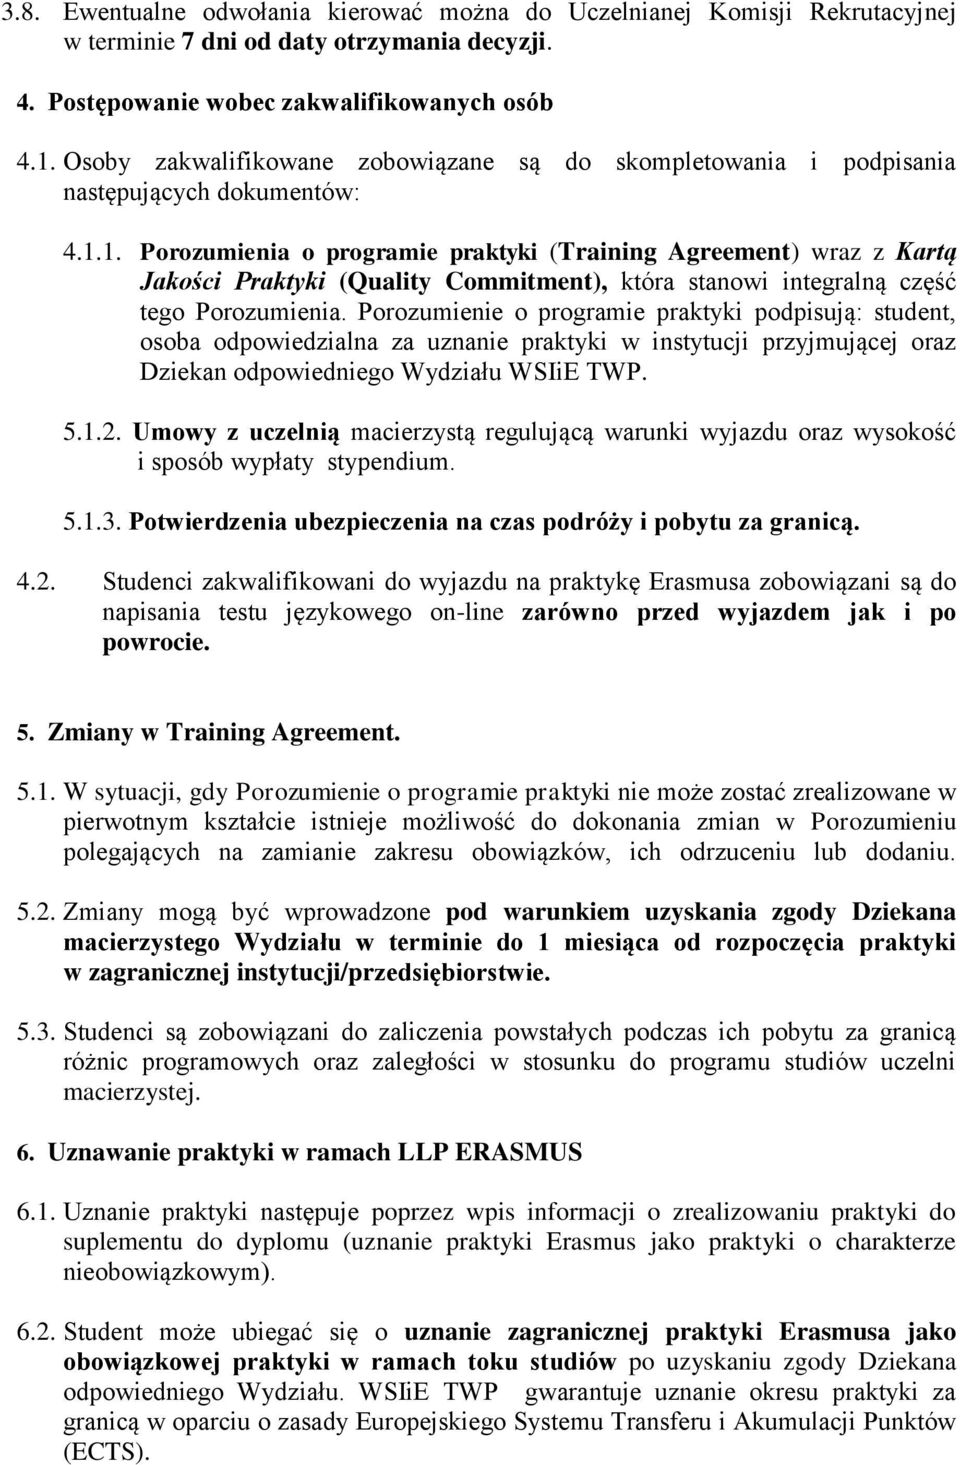 1. Porozumienia o programie praktyki (Training Agreement) wraz z Kartą Jakości Praktyki (Quality Commitment), która stanowi integralną część tego Porozumienia.